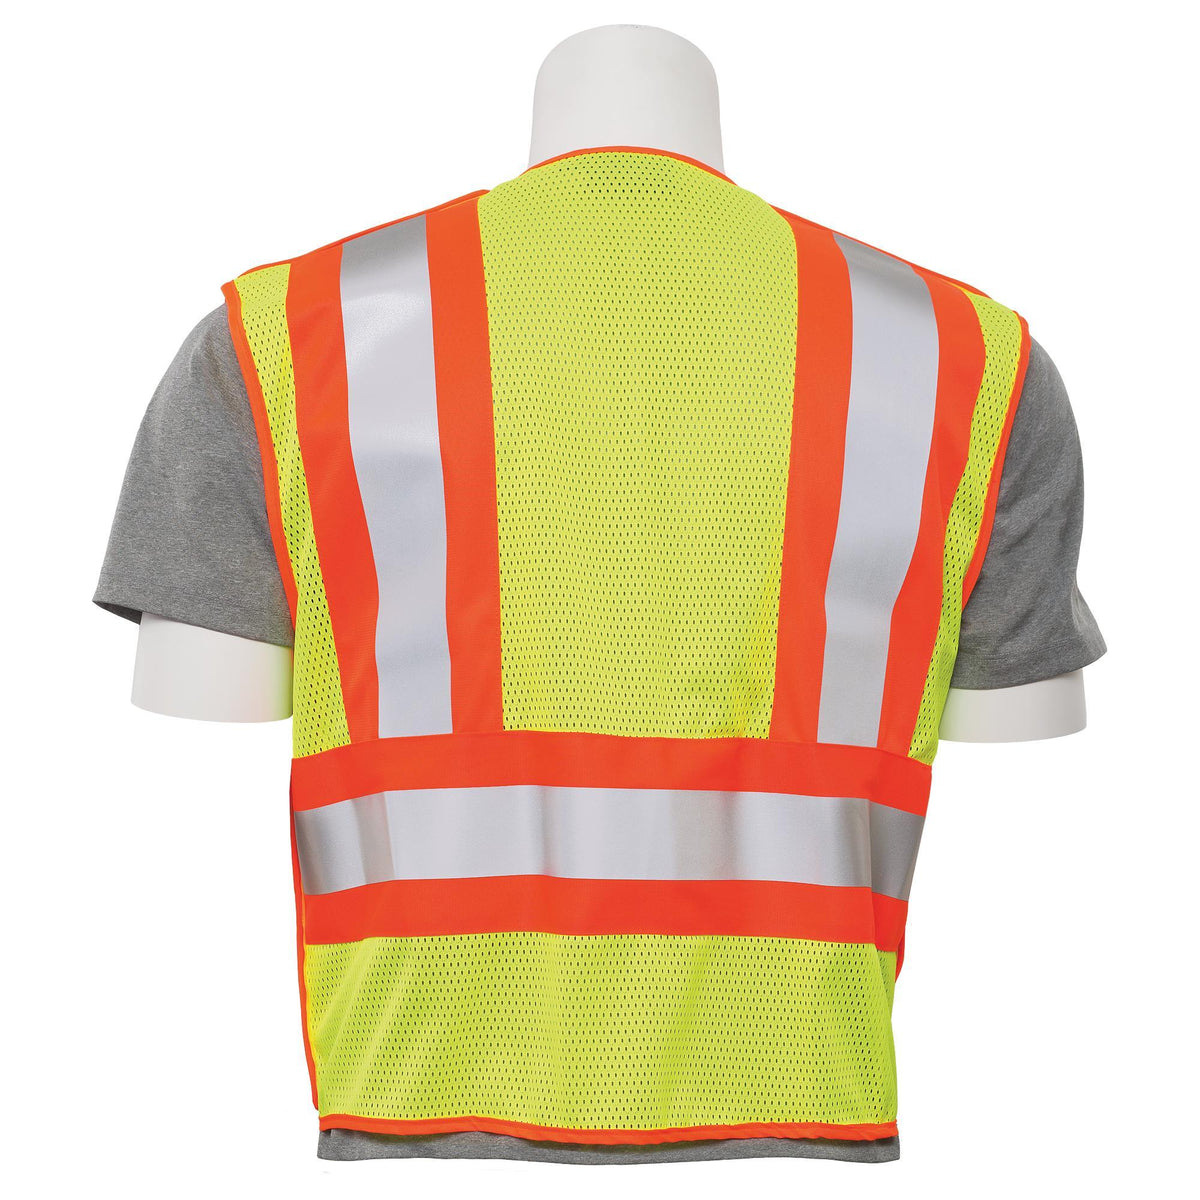 S345 Class 2 Public Safety 5-Point Break-Away Safety Vest 1pc